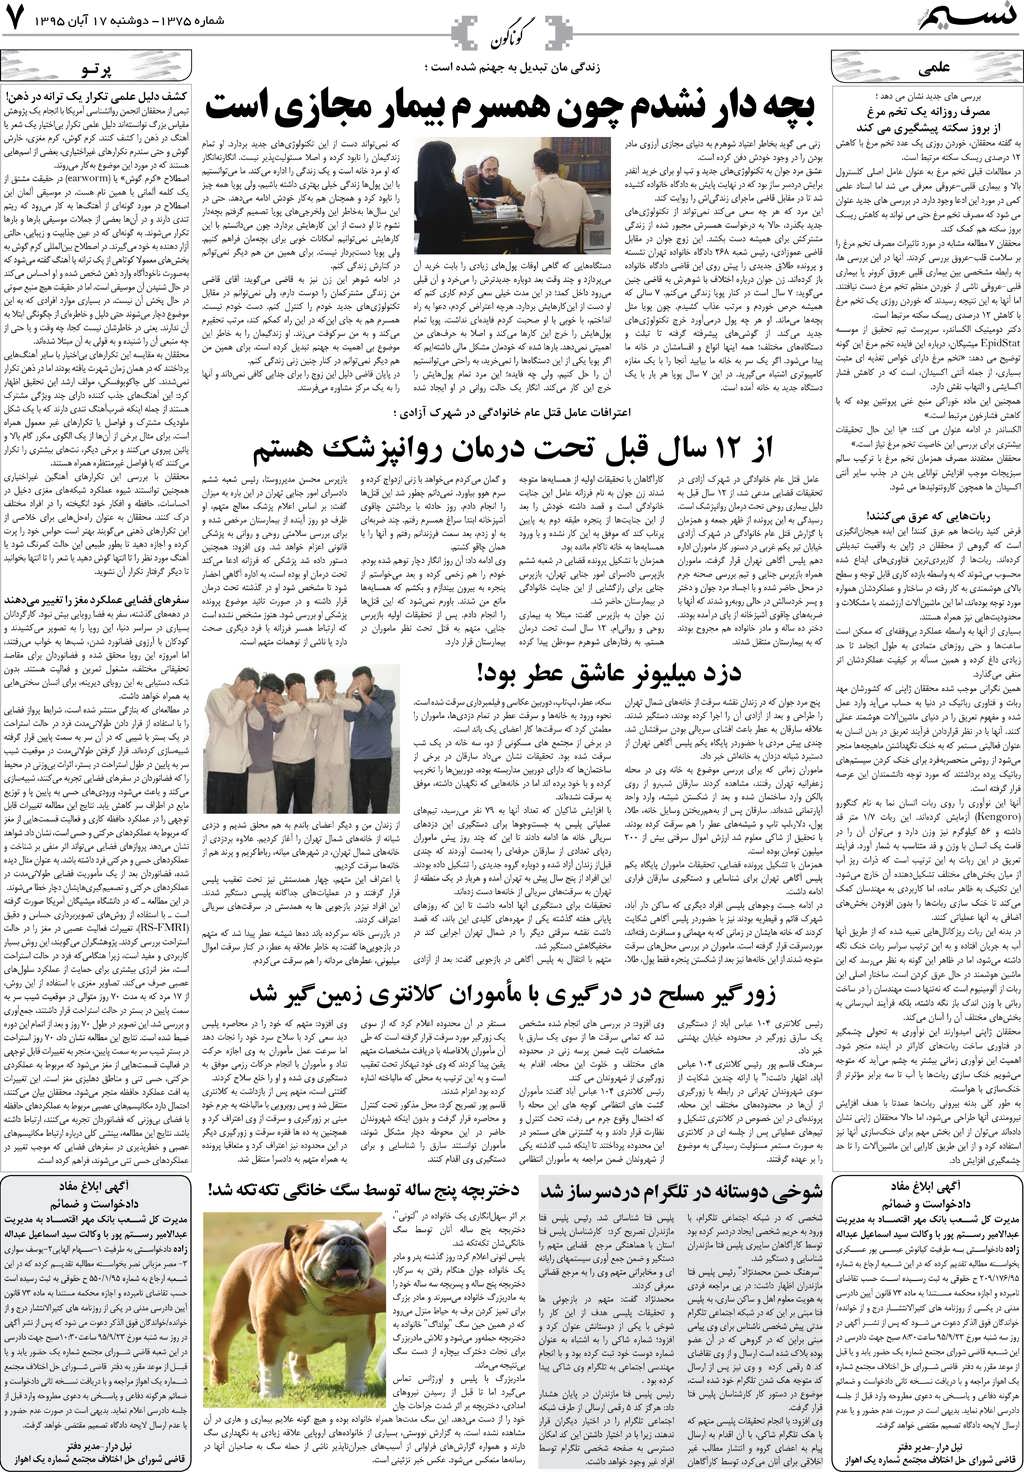 صفحه گوناگون روزنامه نسیم شماره 1375